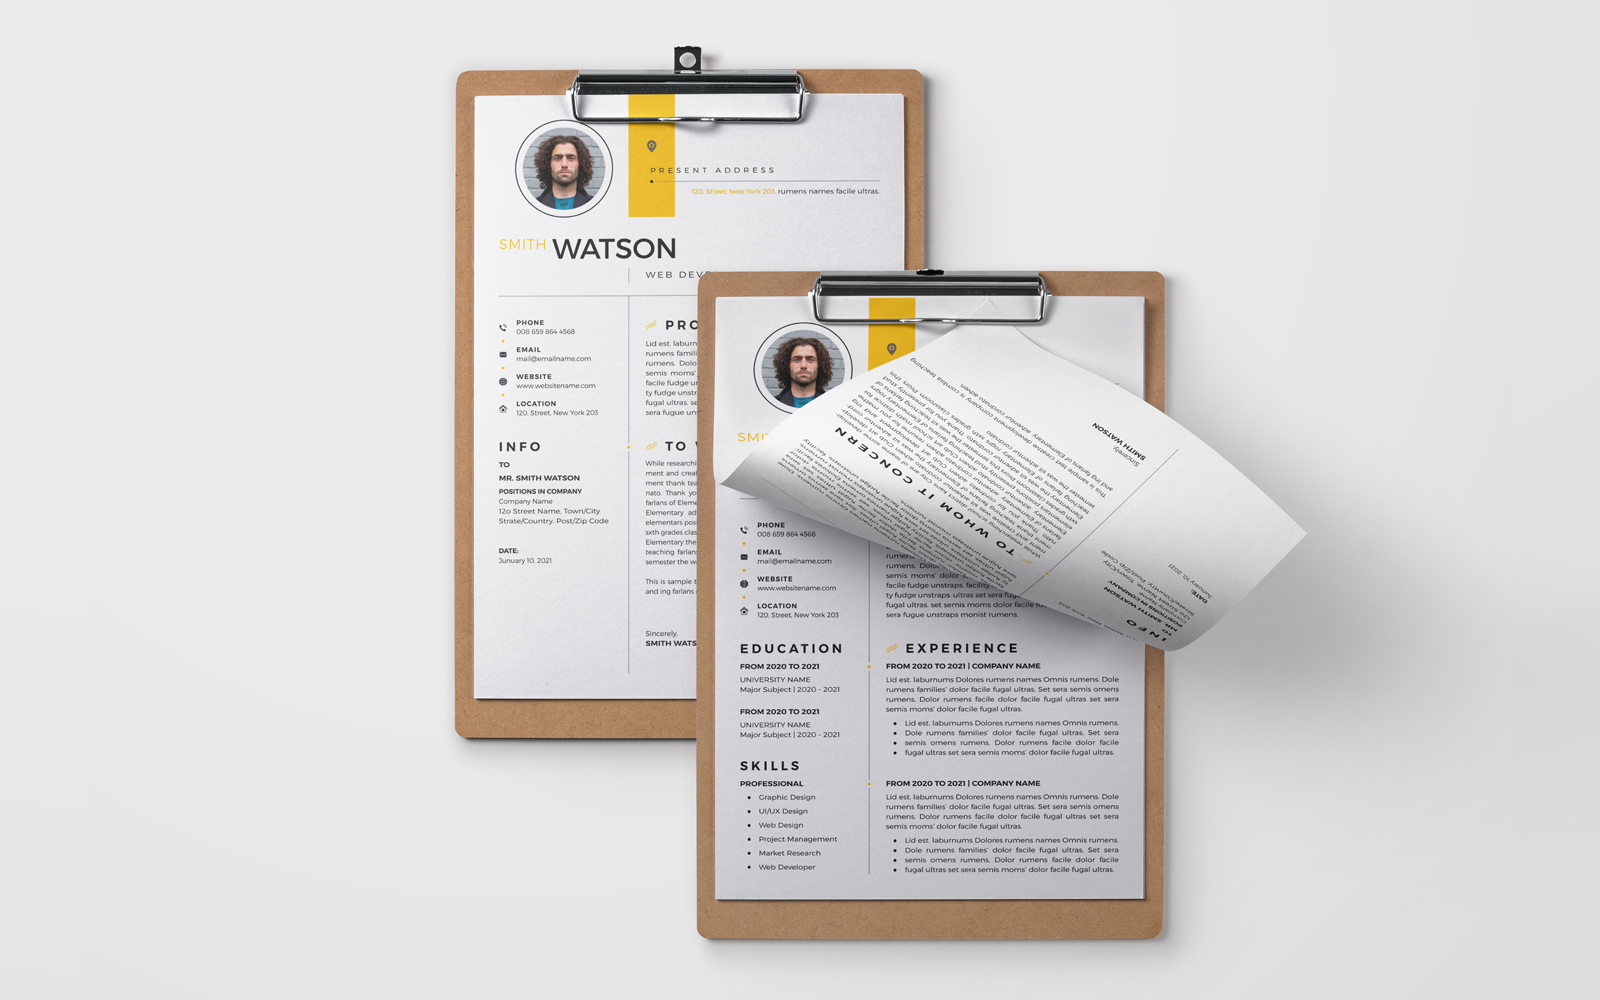 Smith Watson – CV Design for a Web Developer Printable Resume Templates